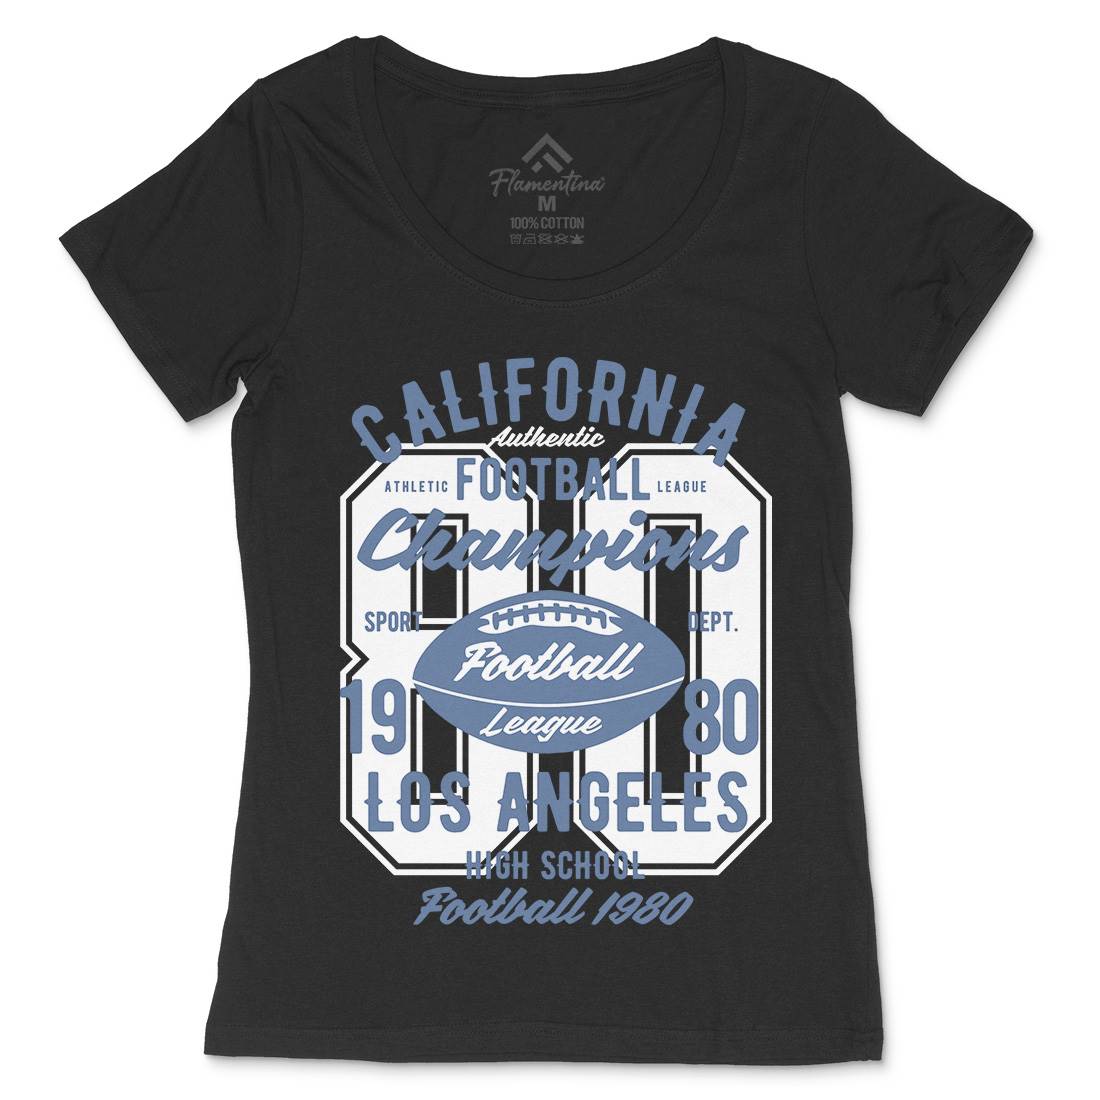 California Football League Womens Scoop Neck T-Shirt Sport B193